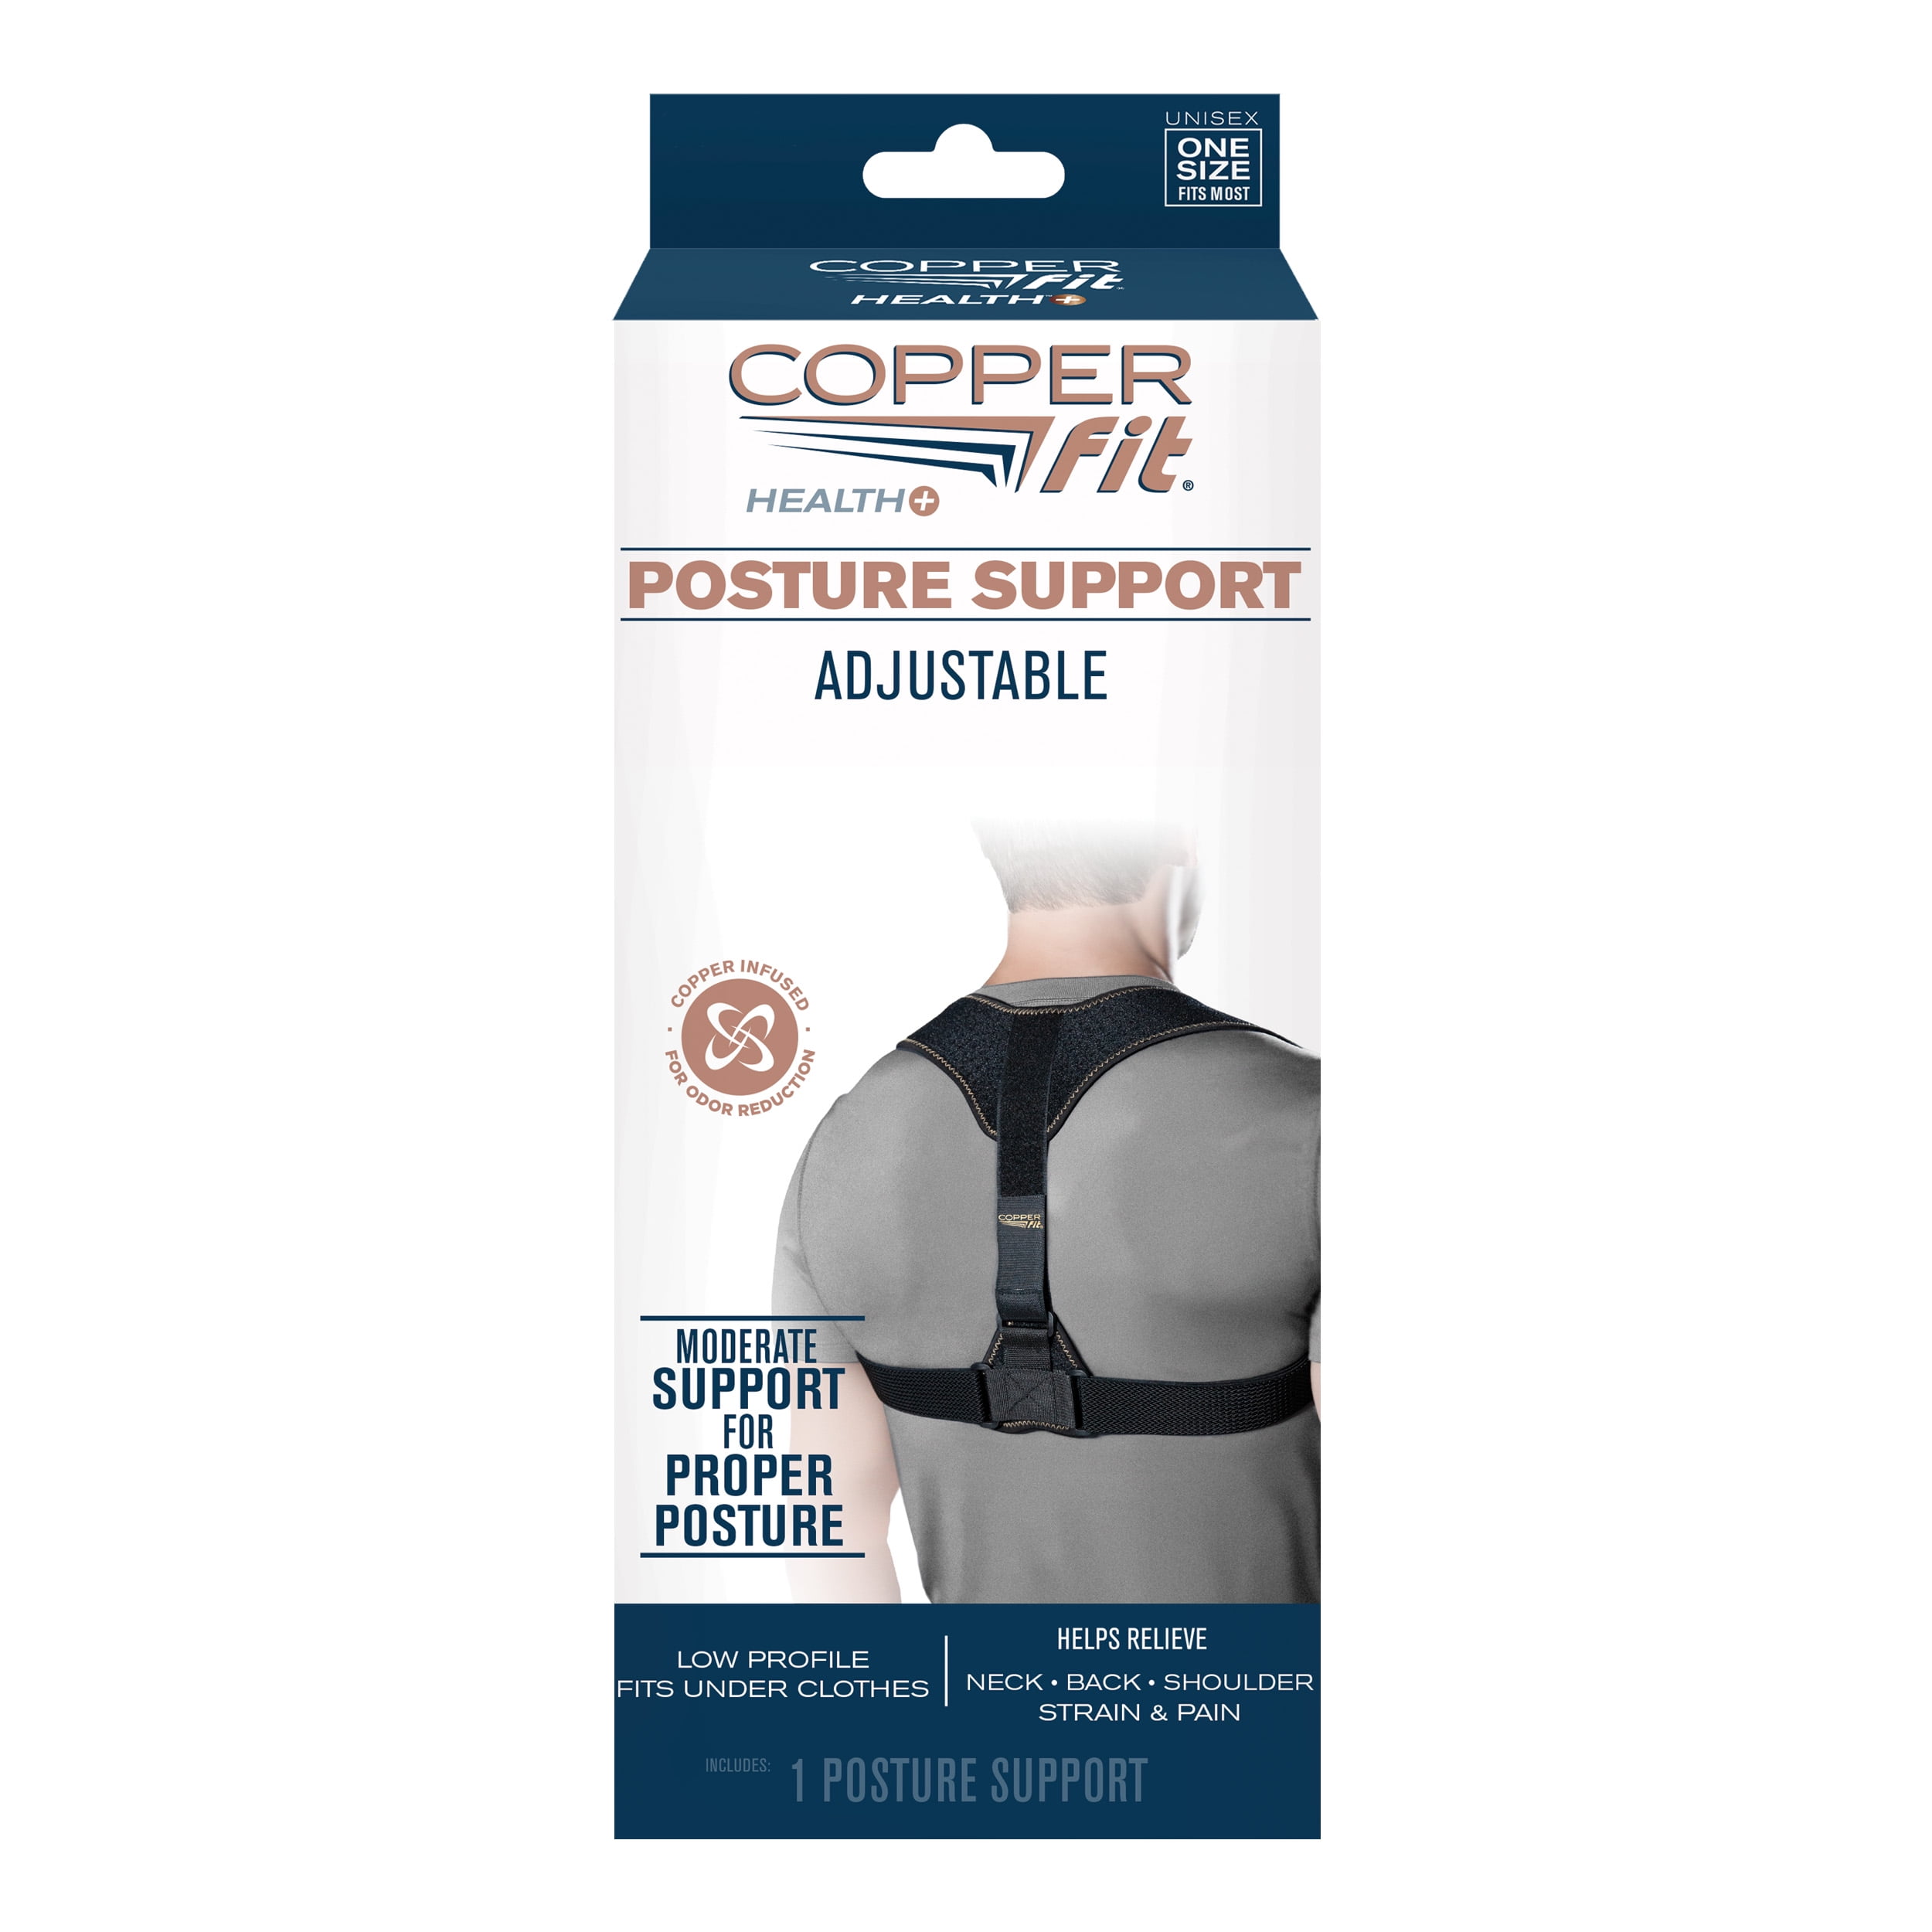 Posture Corrector Shoulder Brace